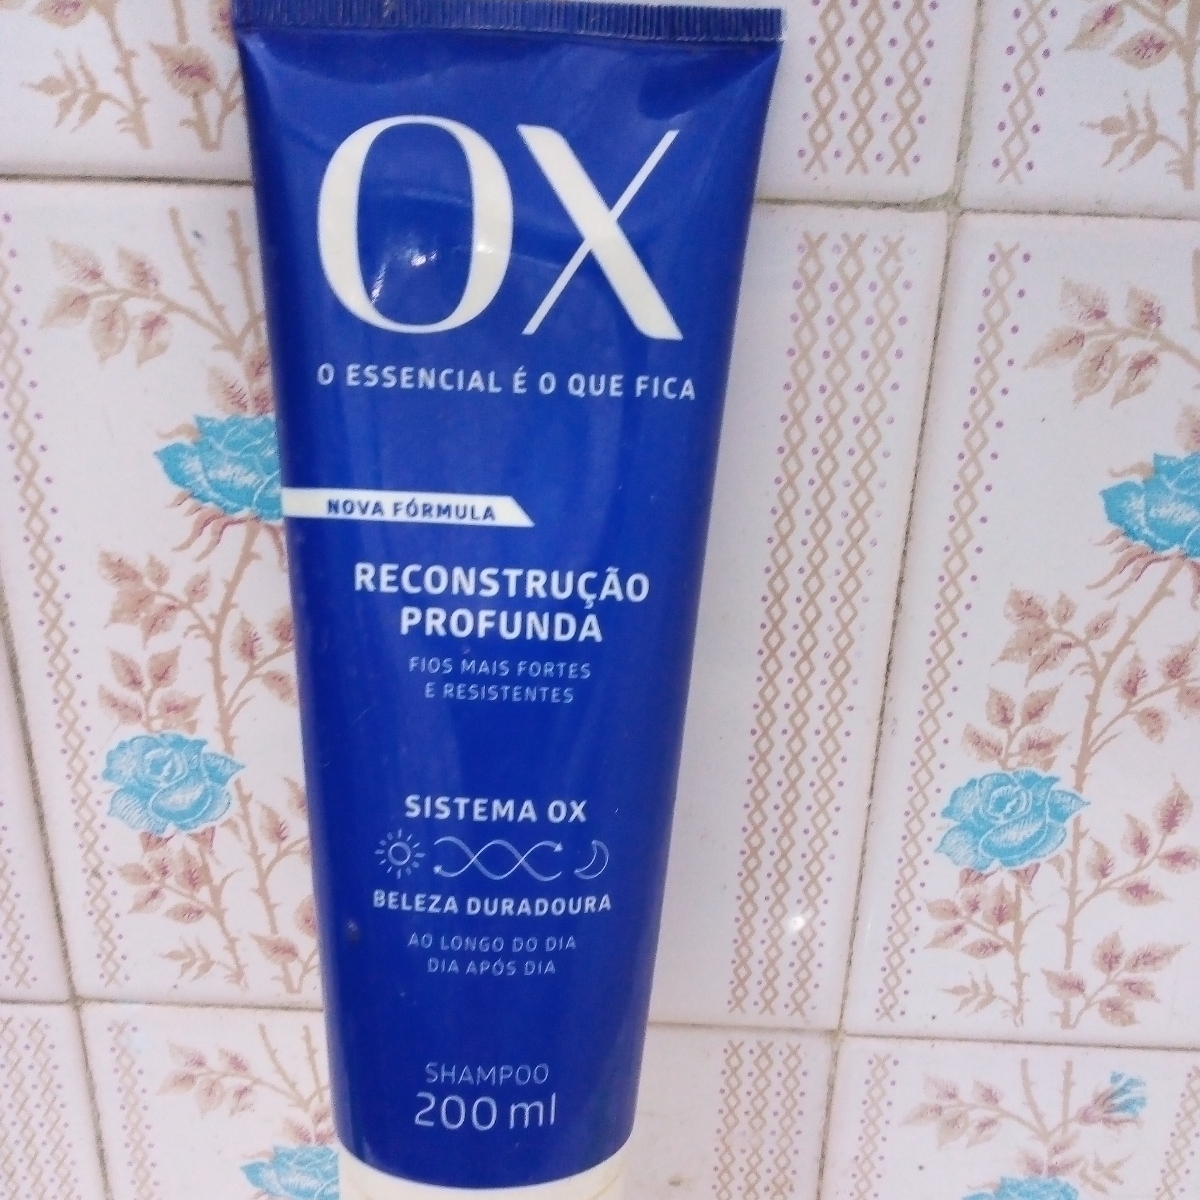 Flora Shampoo OX Reviews